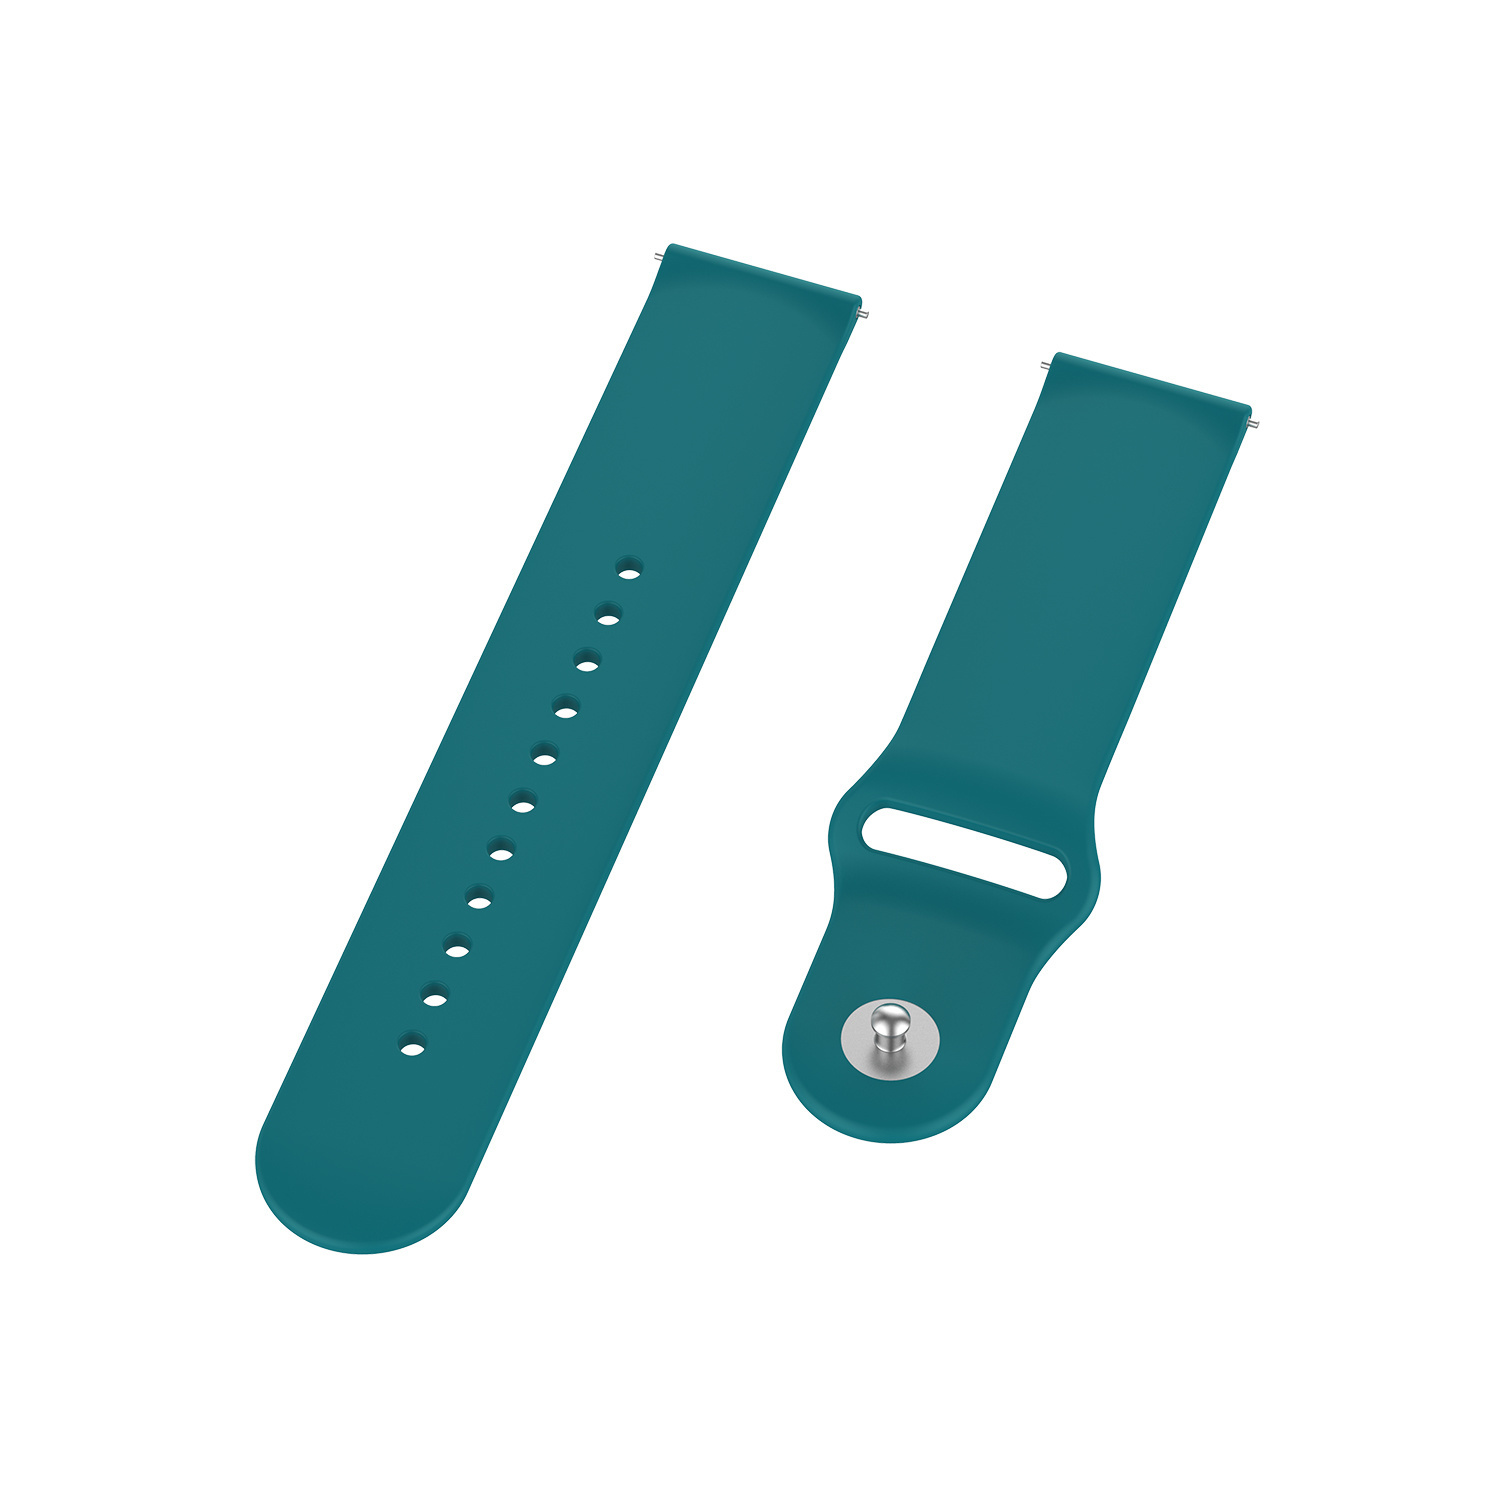 Cinturino sport in silicone per Huawei Watch GT - verde